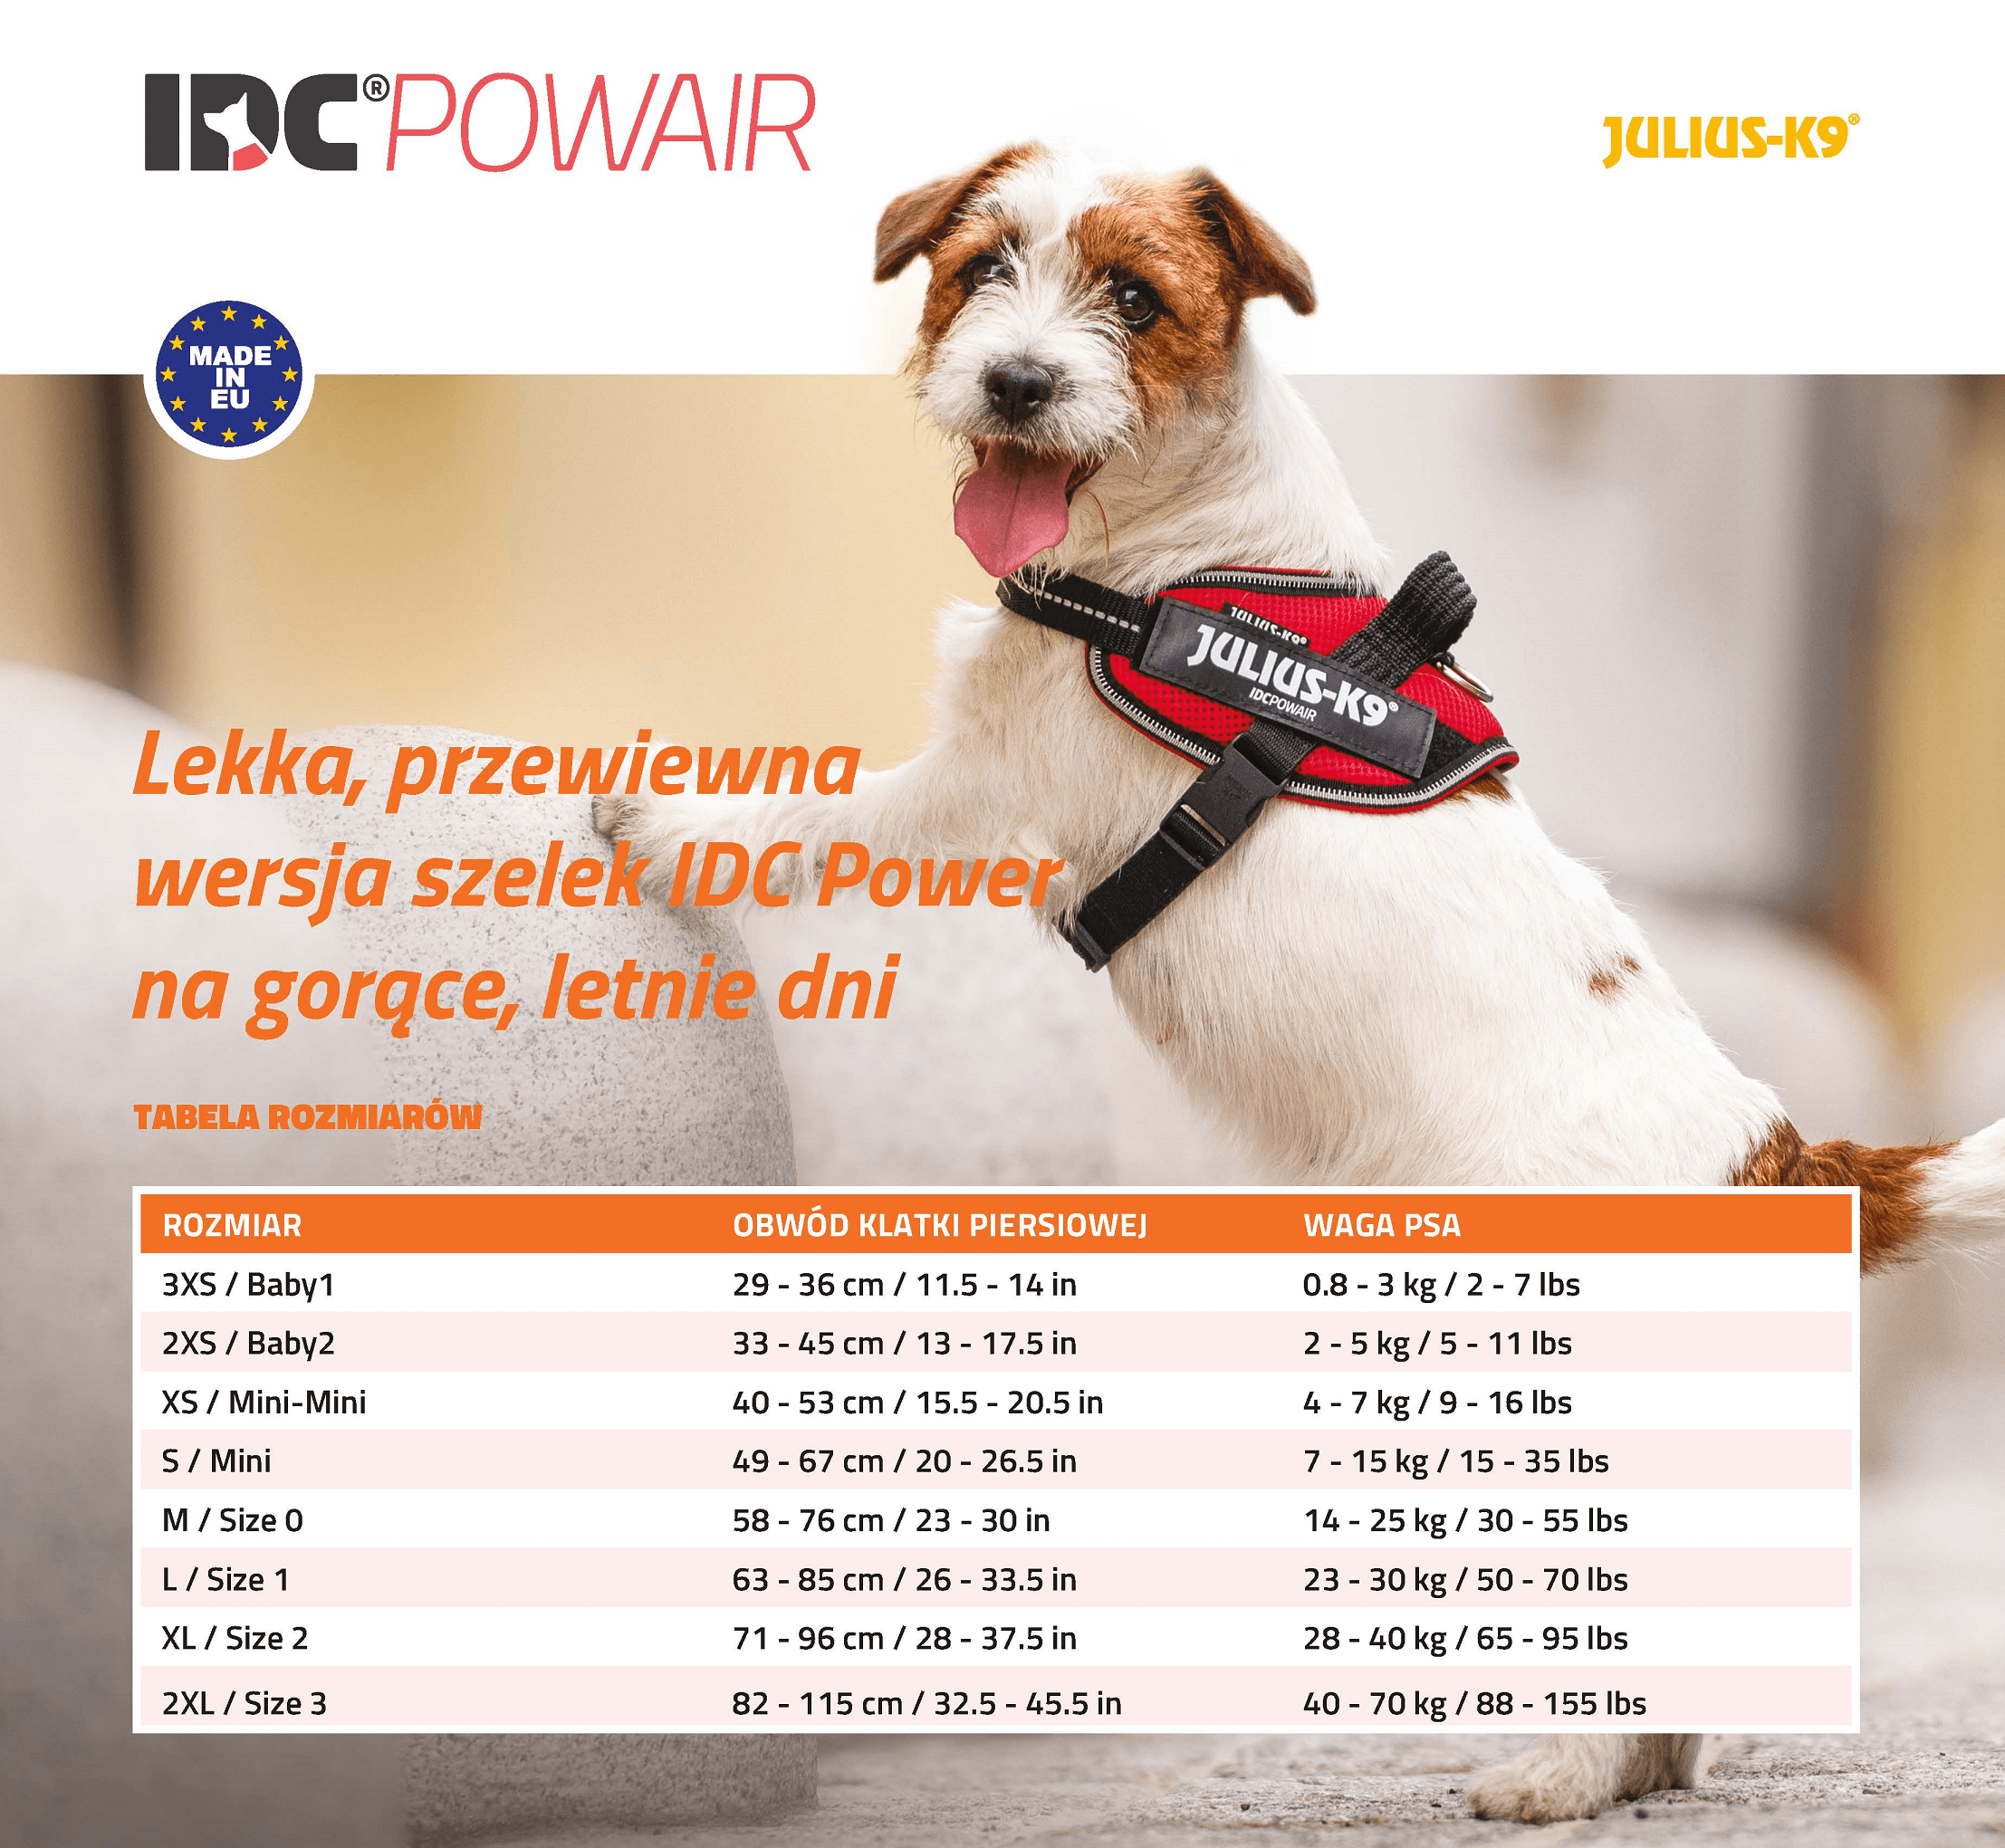 szelki dla psa IDC PowAir tabela rozmiarów